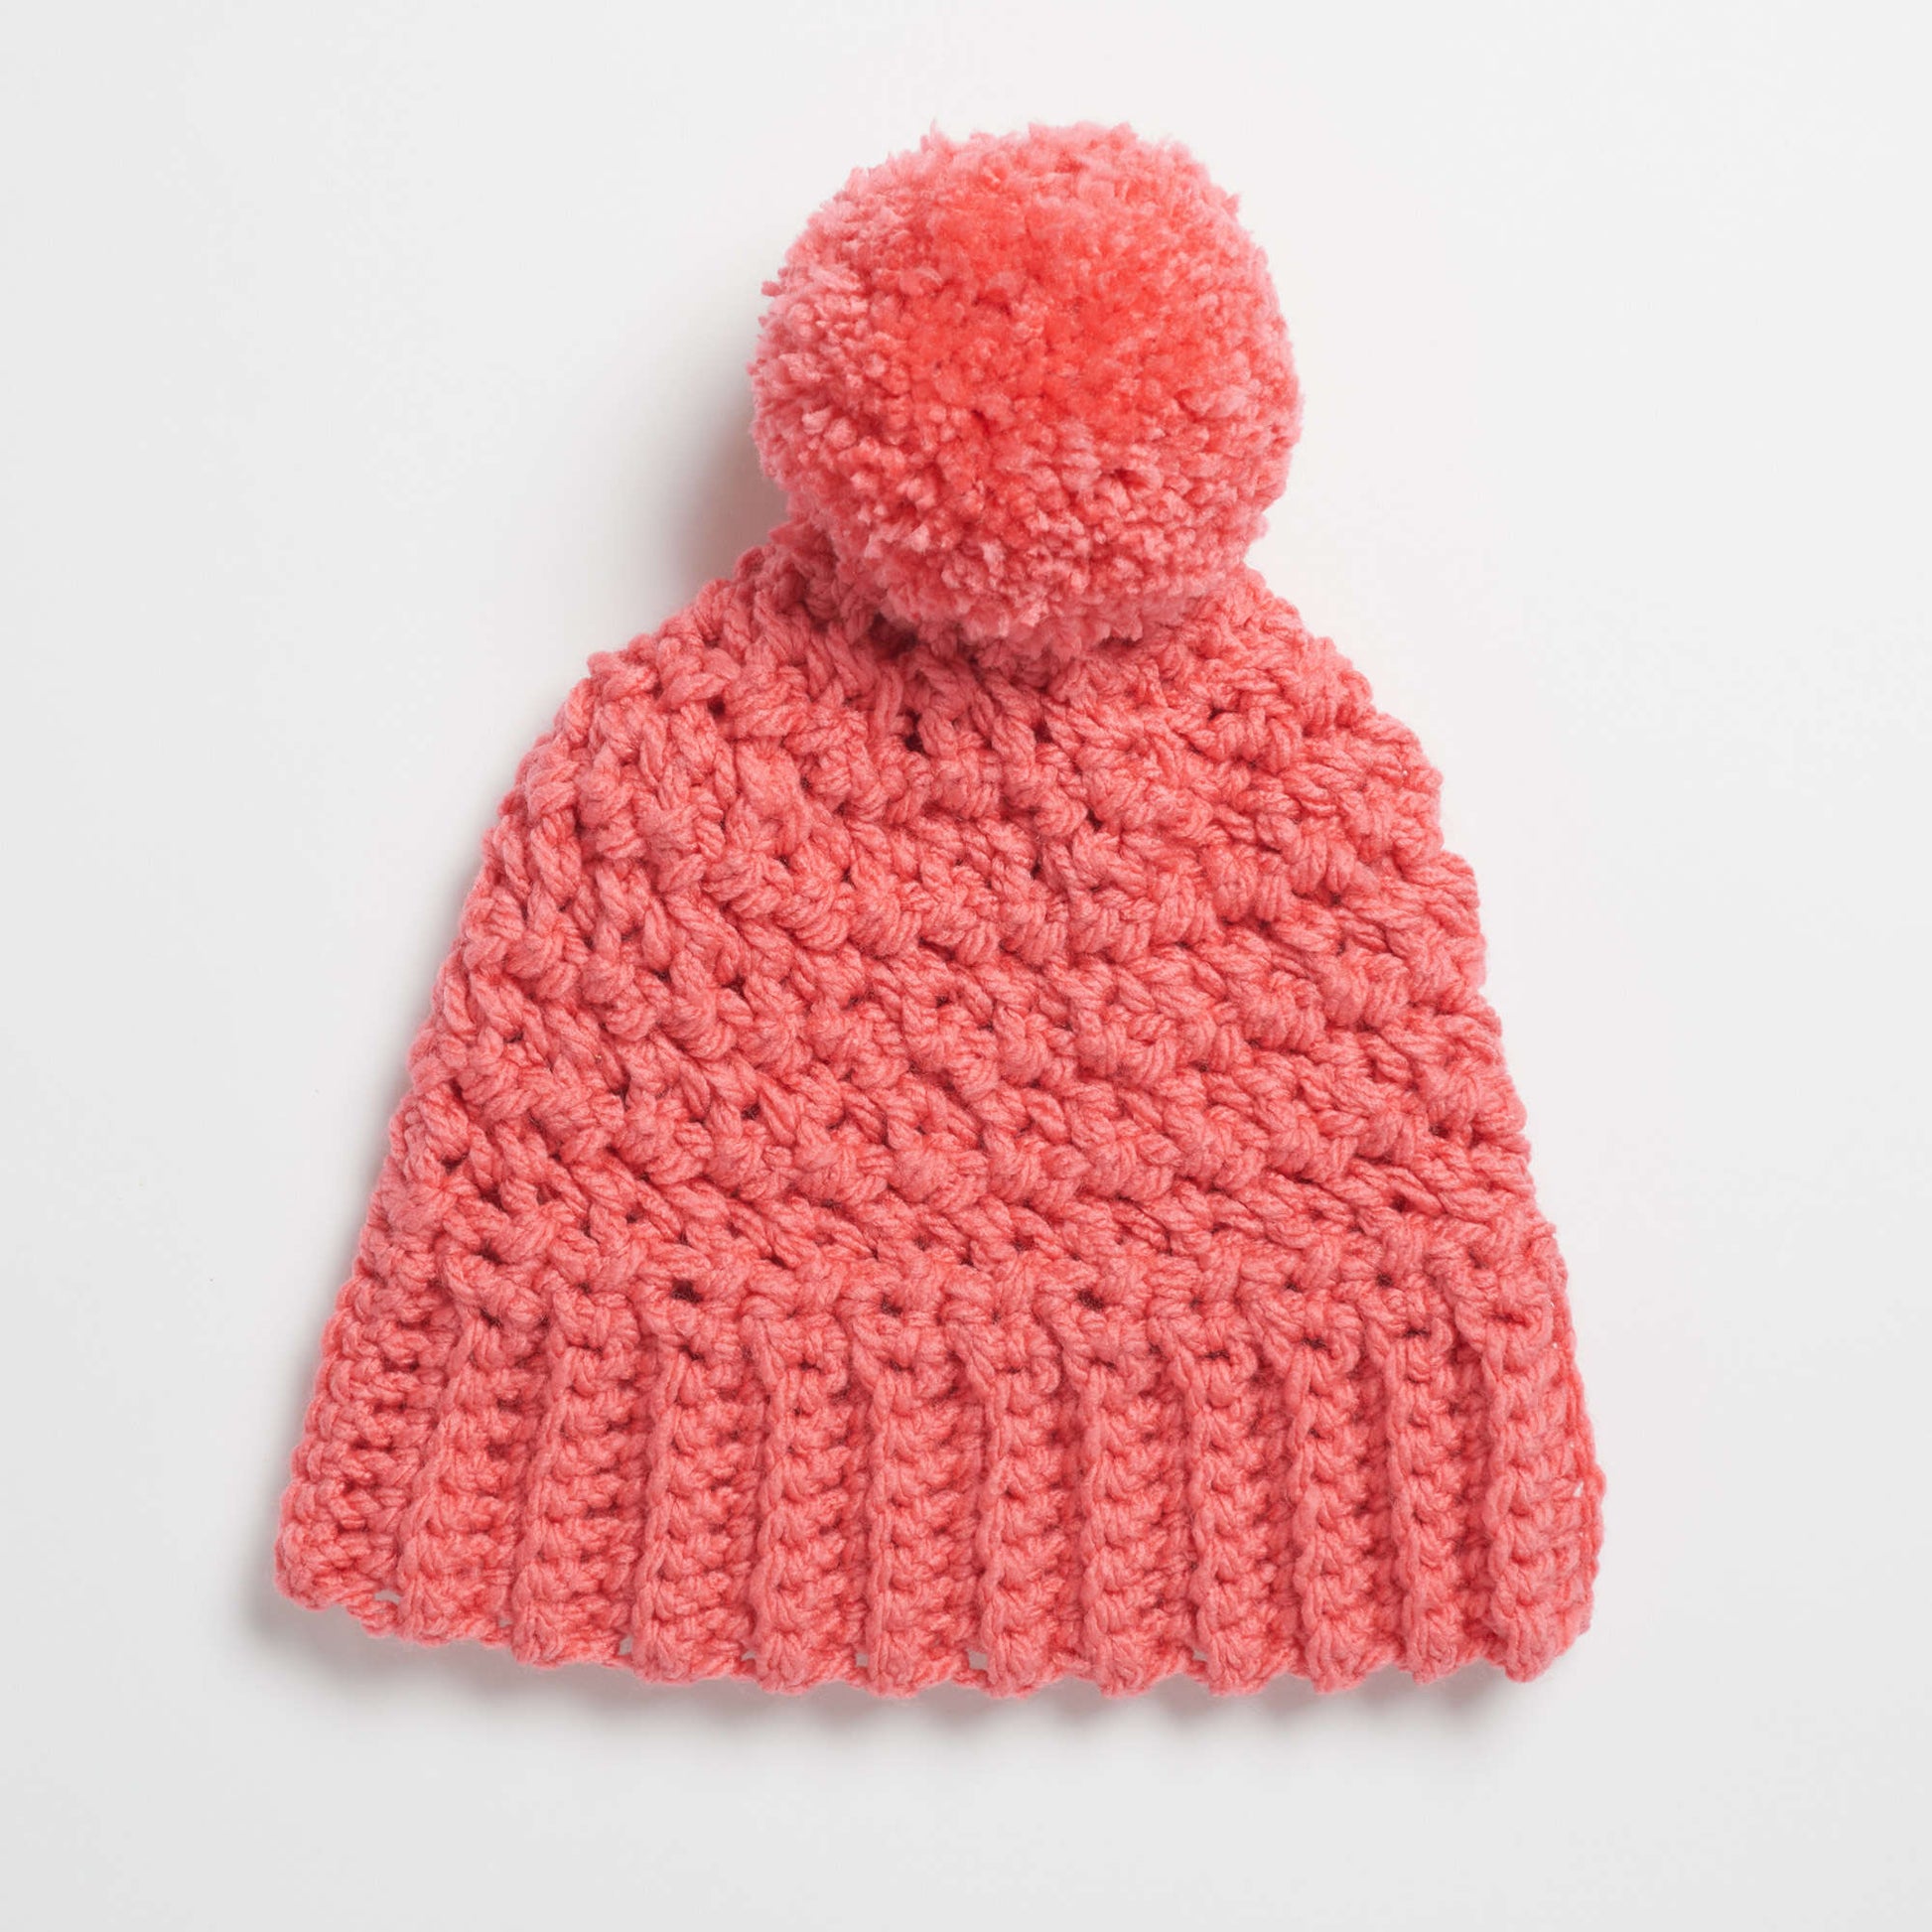 Free Red Heart Cute Crochet Hat Pattern